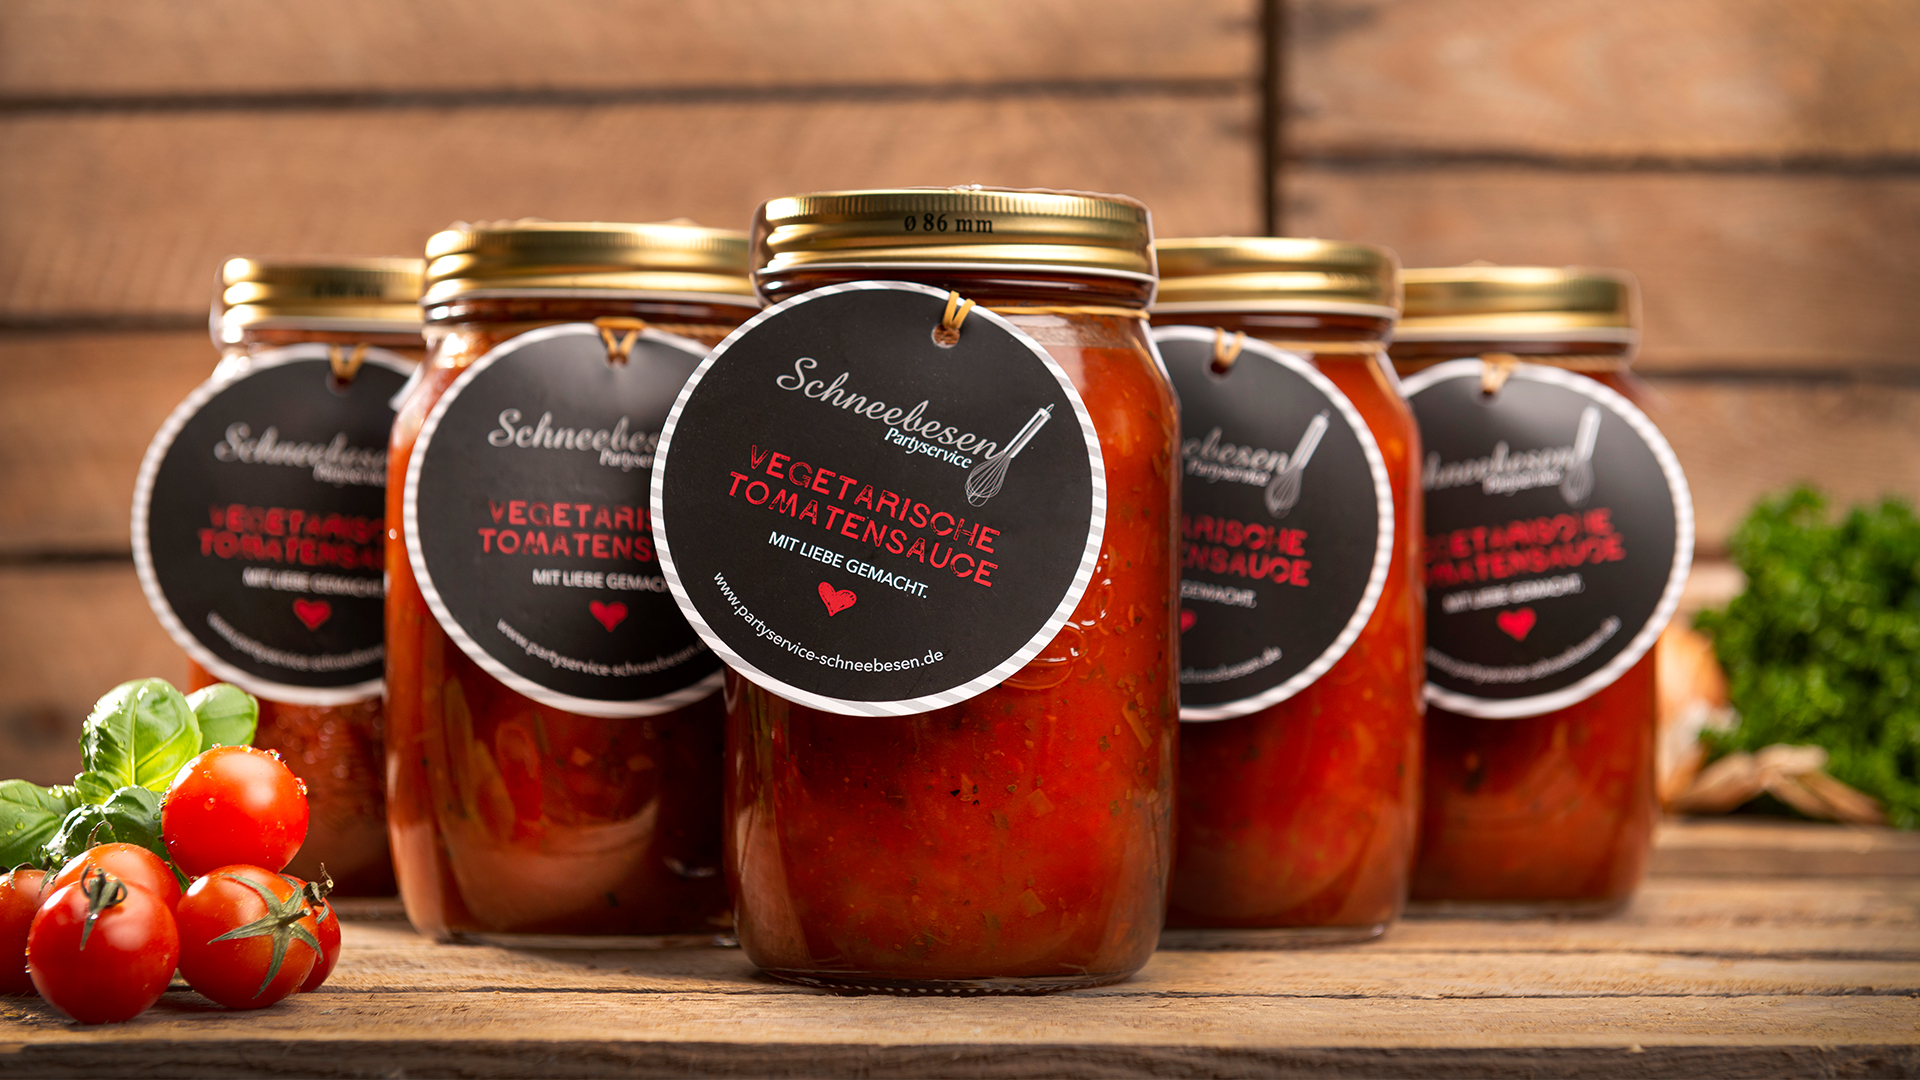 Scribble Werbeagentur nah bei Mönchengladbach zeigt Etiketten am Produkt vegetarische Tomatensause. 